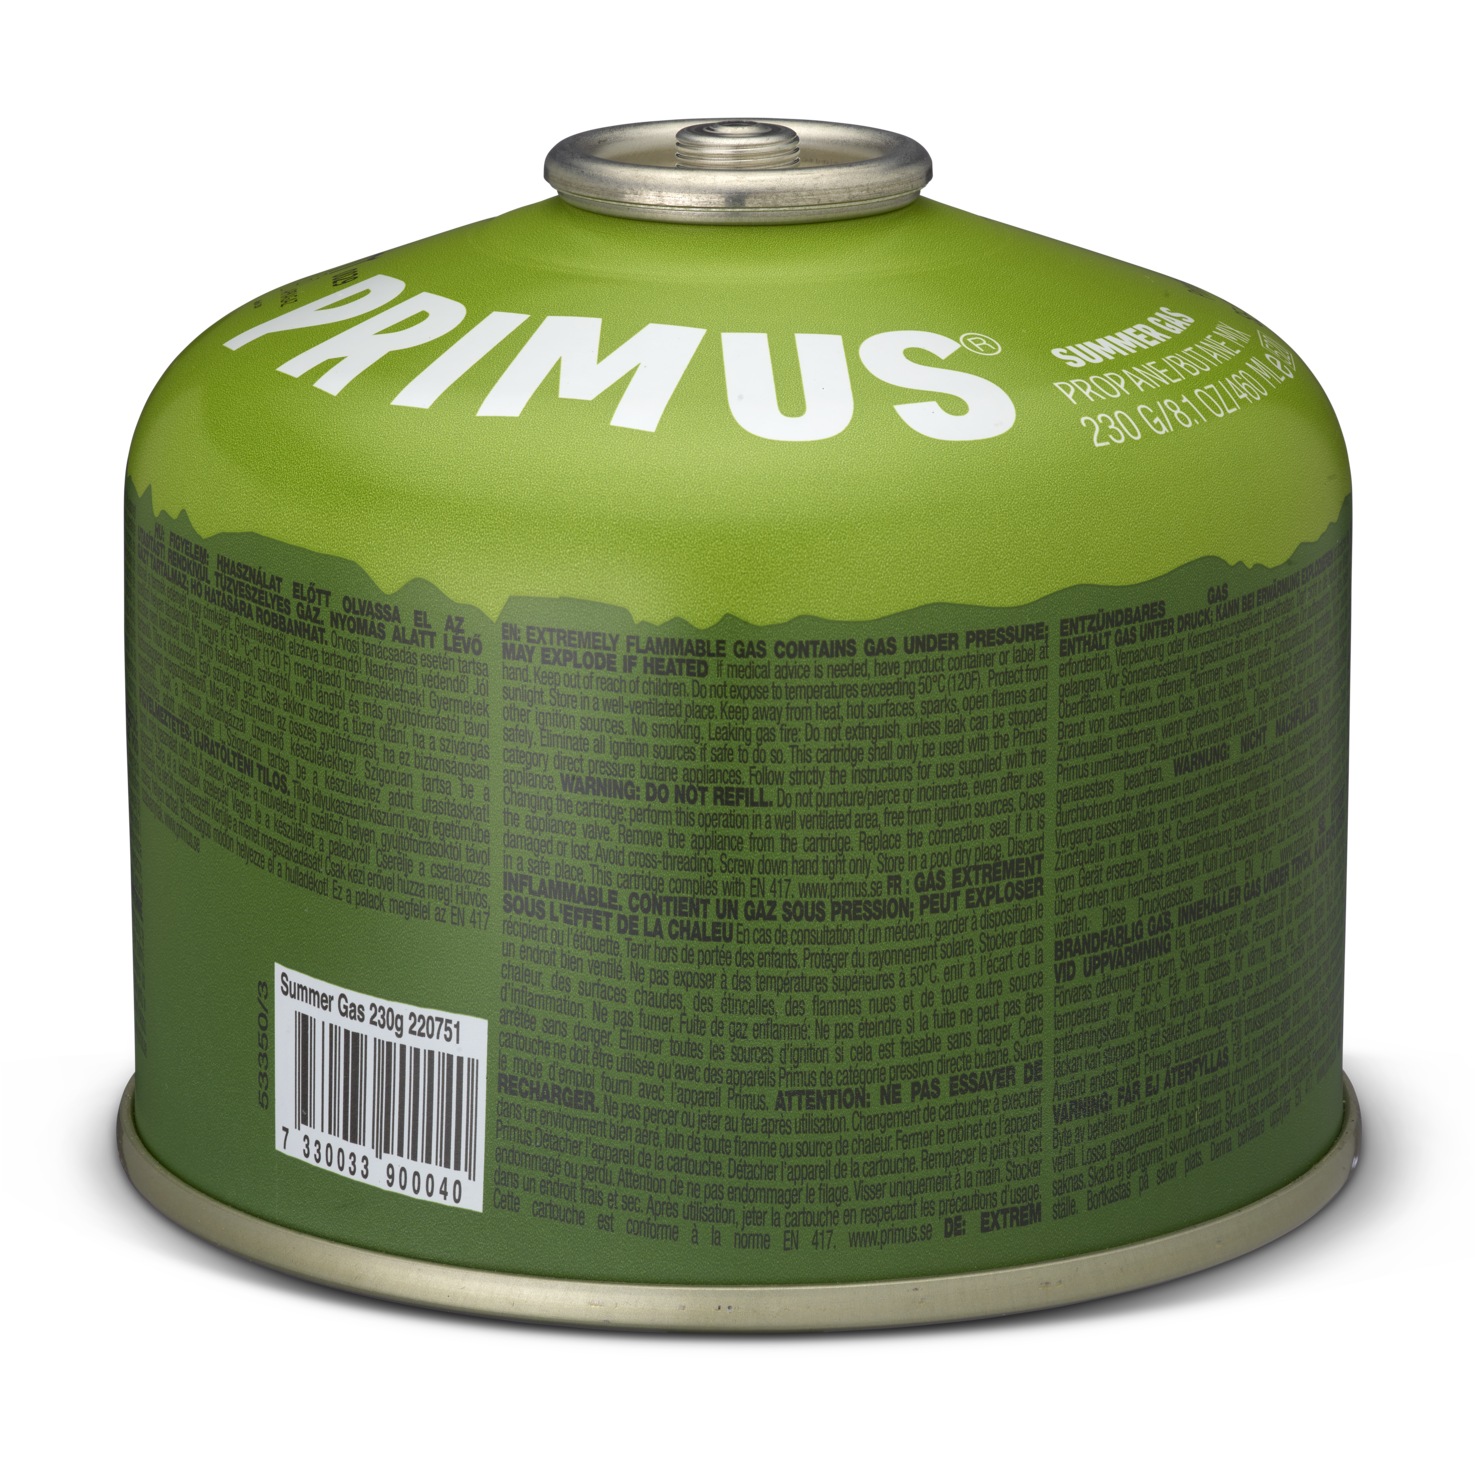 Produktbild von Primus Summer - Gaskartusche - 230g